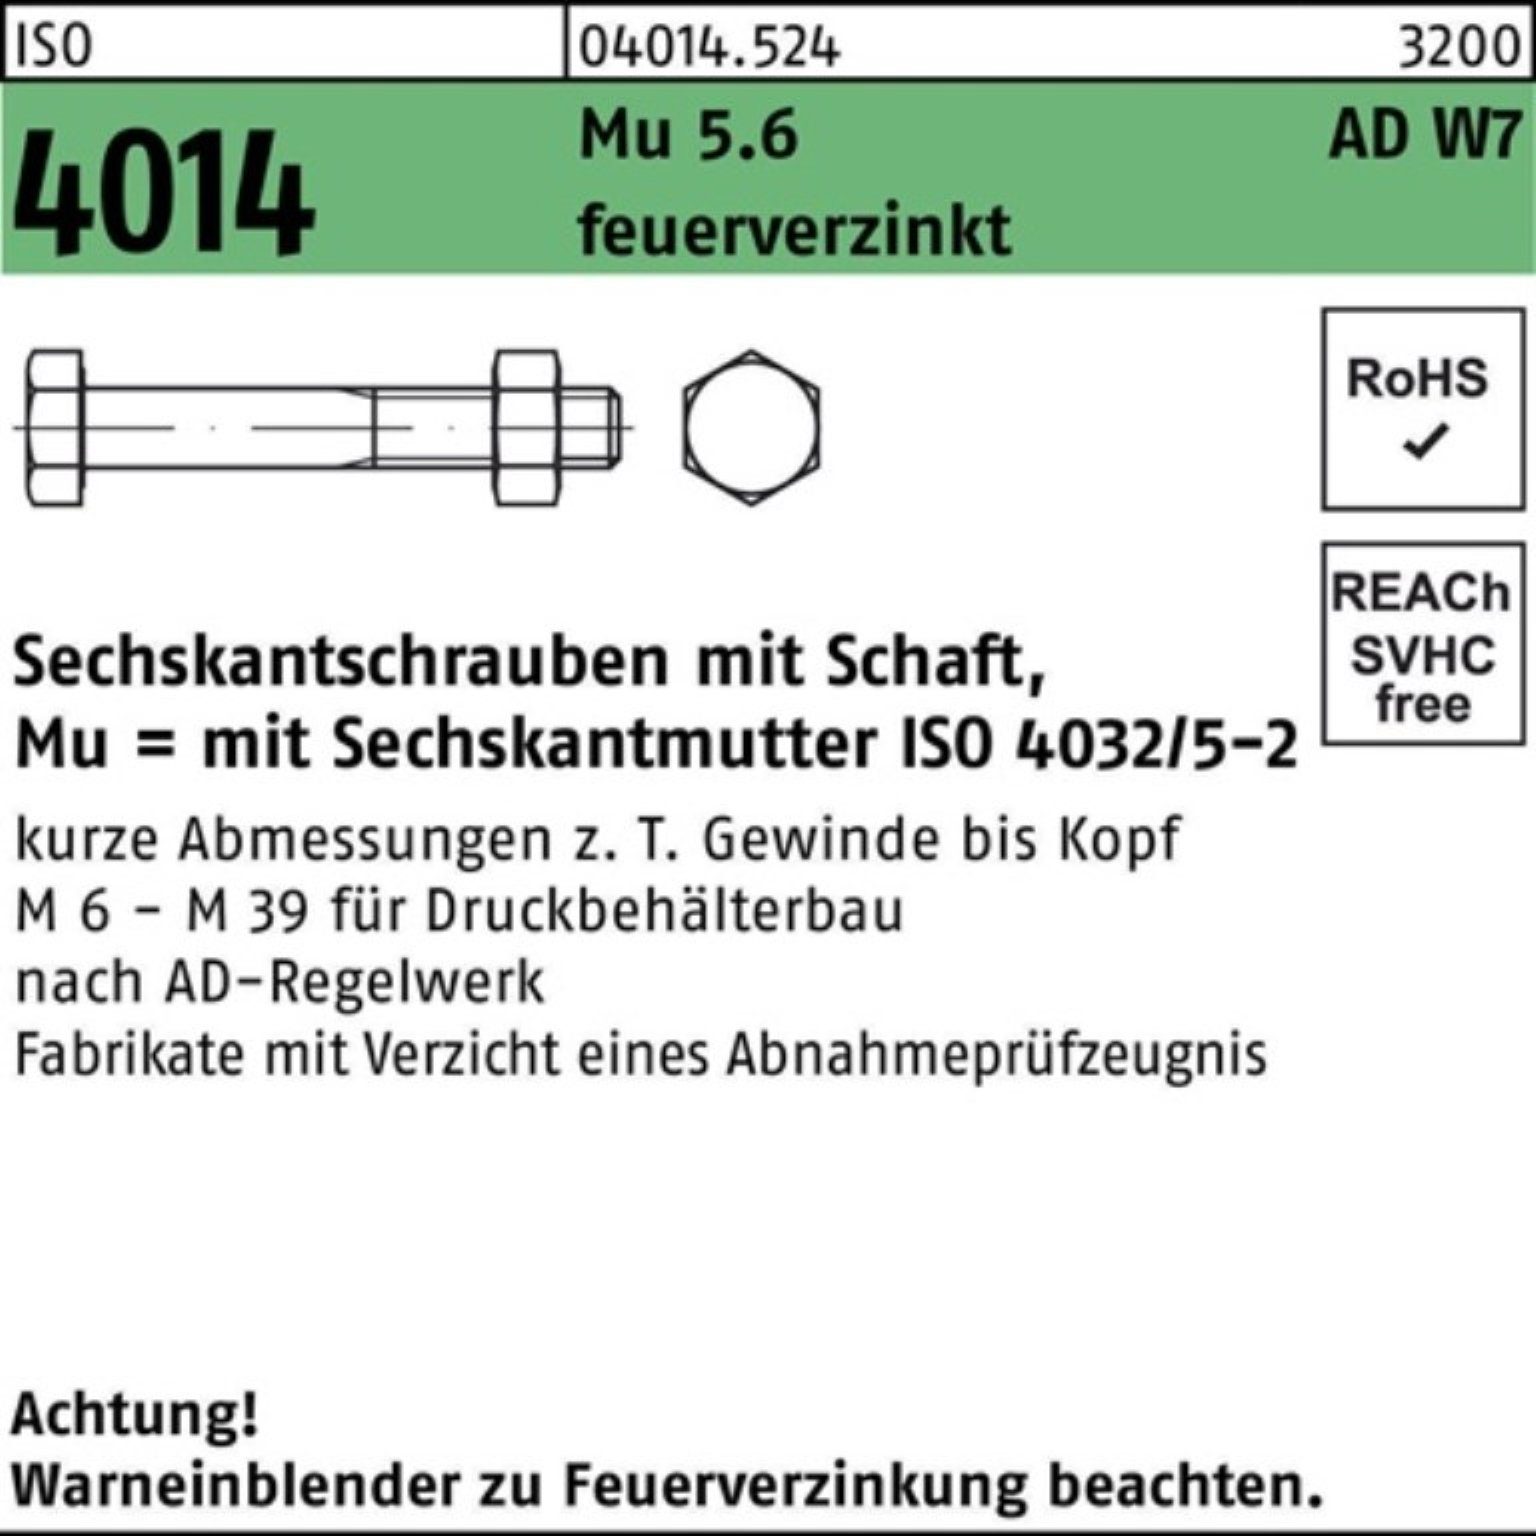 Mu 5.6 feuerve Schaft Bufab Sechskantschraube 4014 85 Pack ISO Sechskantschraube 100er W7 M16x